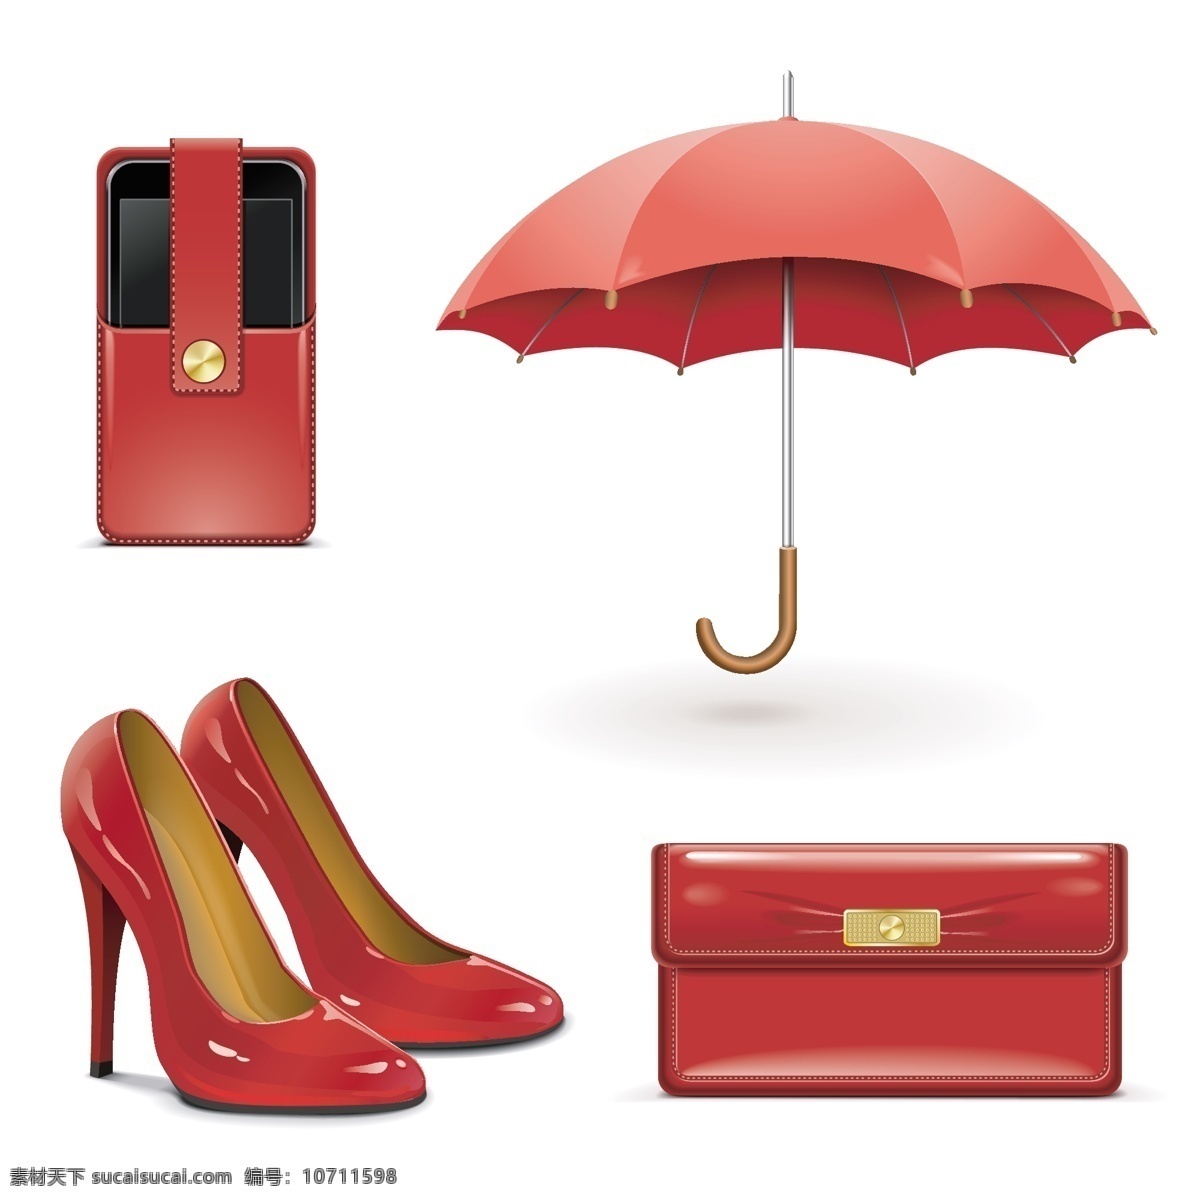 女性用品 鞋子 高跟鞋 钱包 红雨伞 手机套 图标 标志 标签 logo 小图标 标识标志图标 矢量